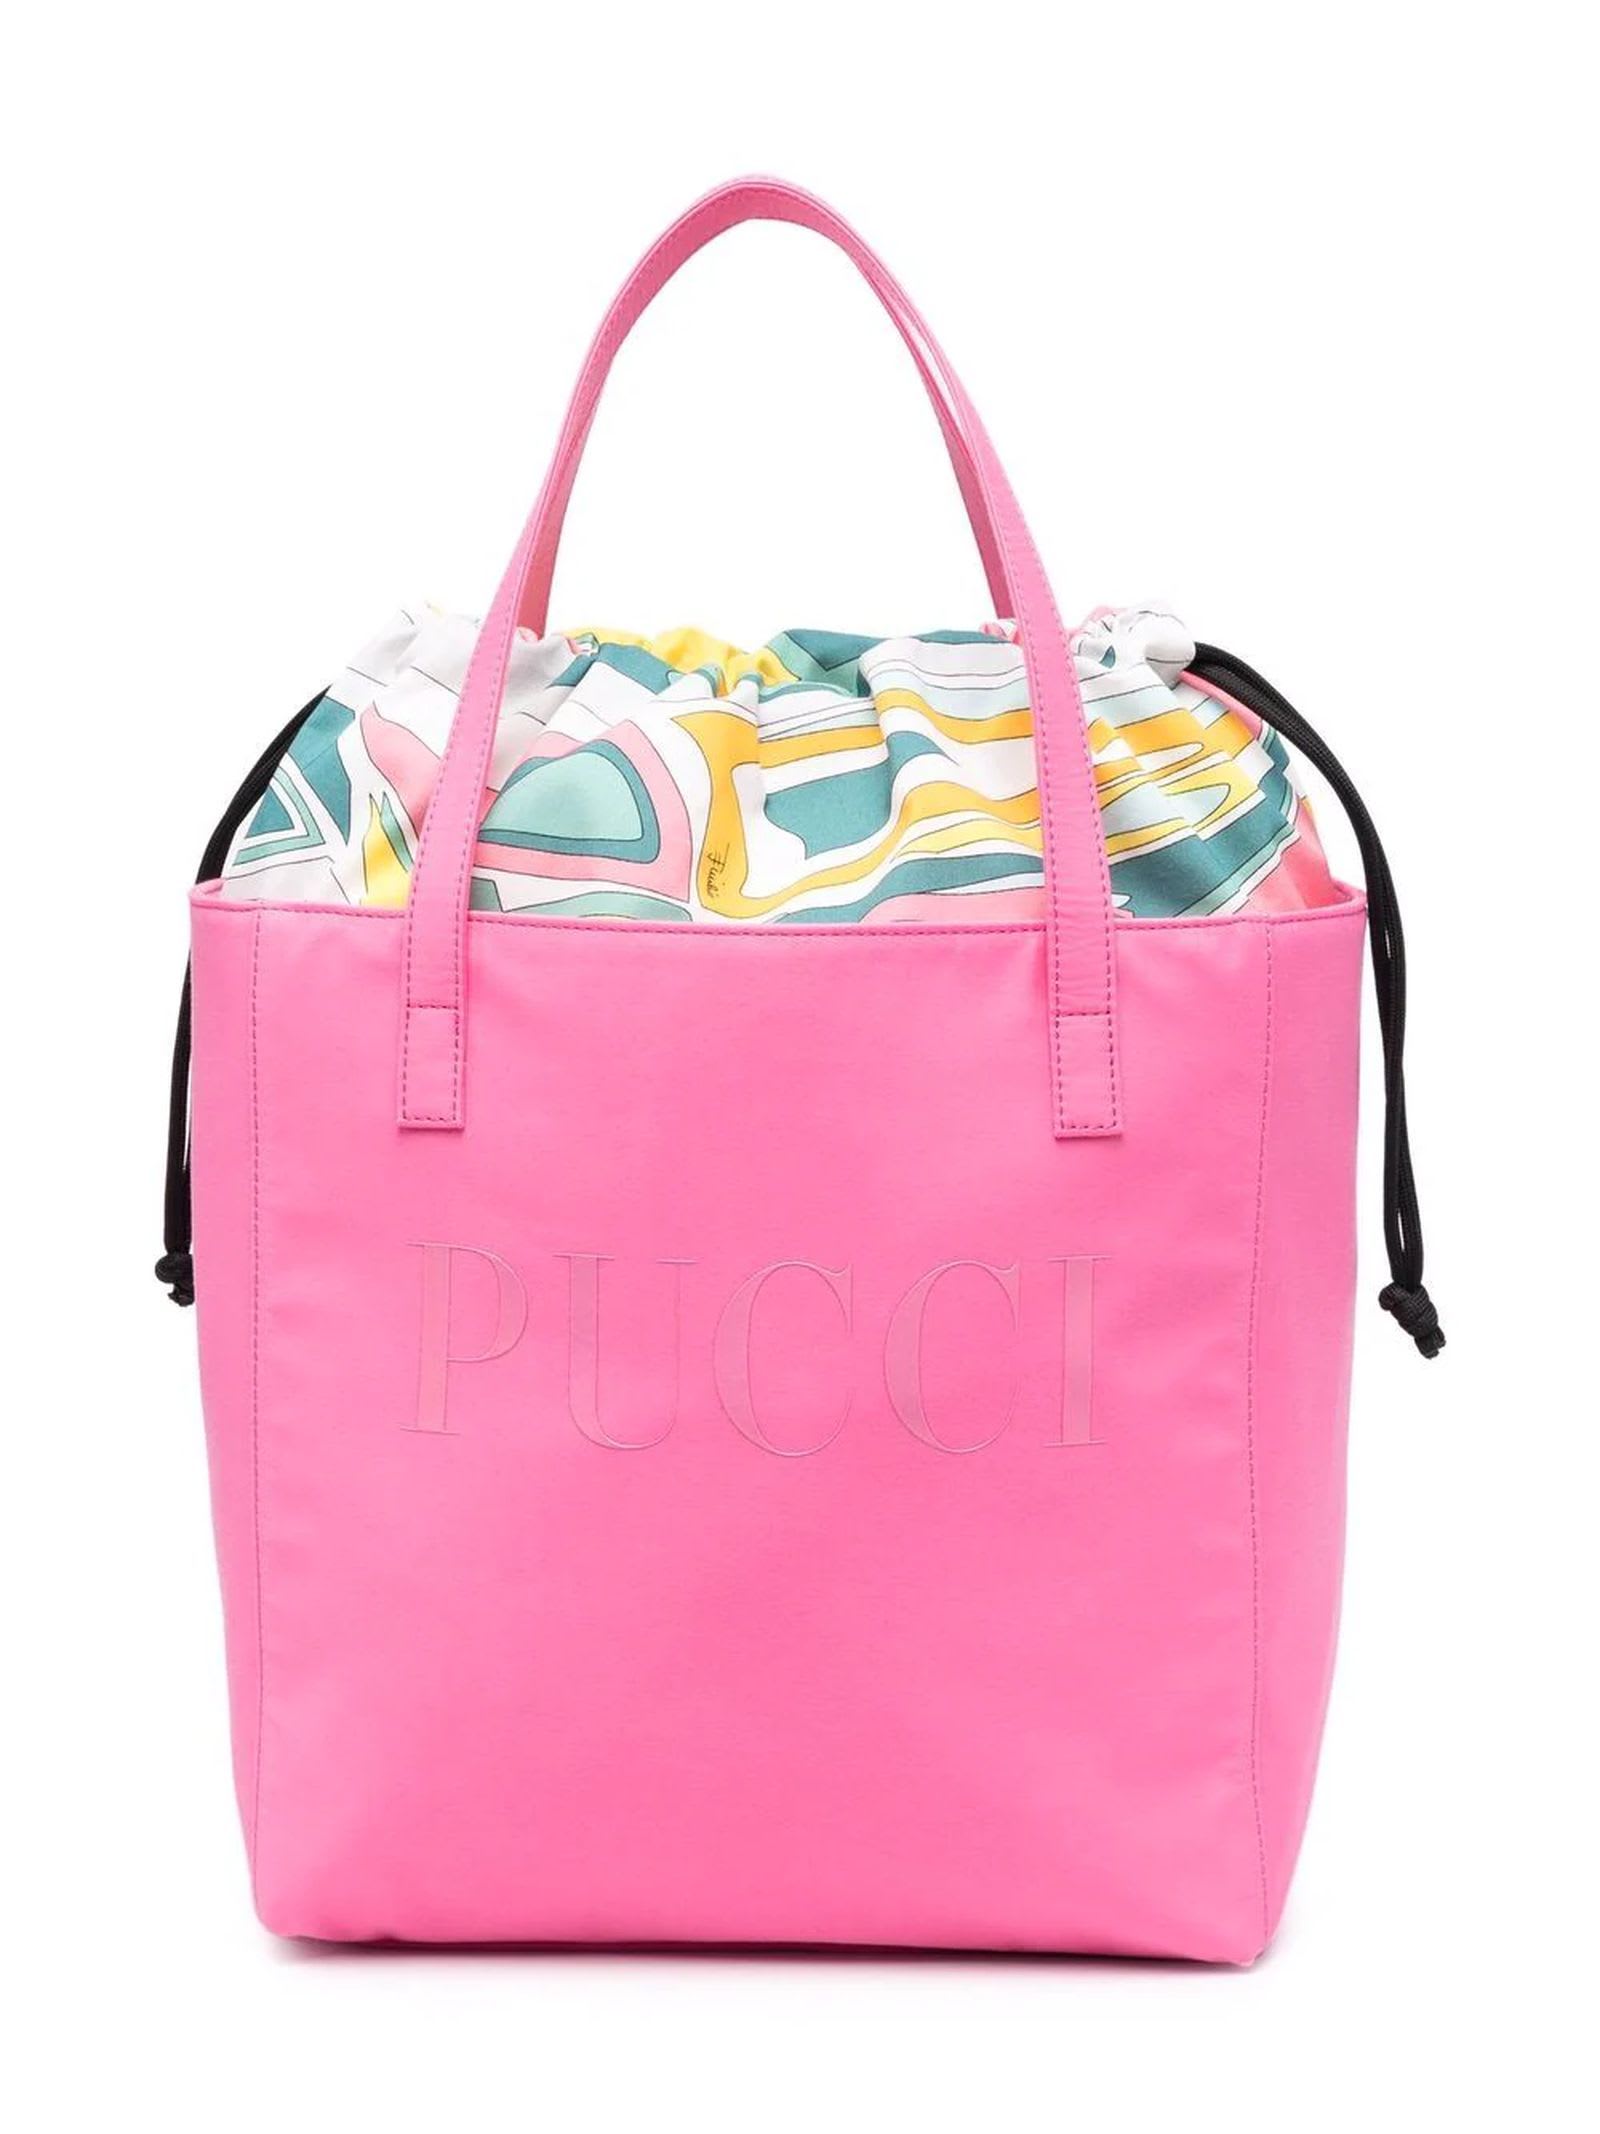 Emilio Pucci Pink Cotton Bag